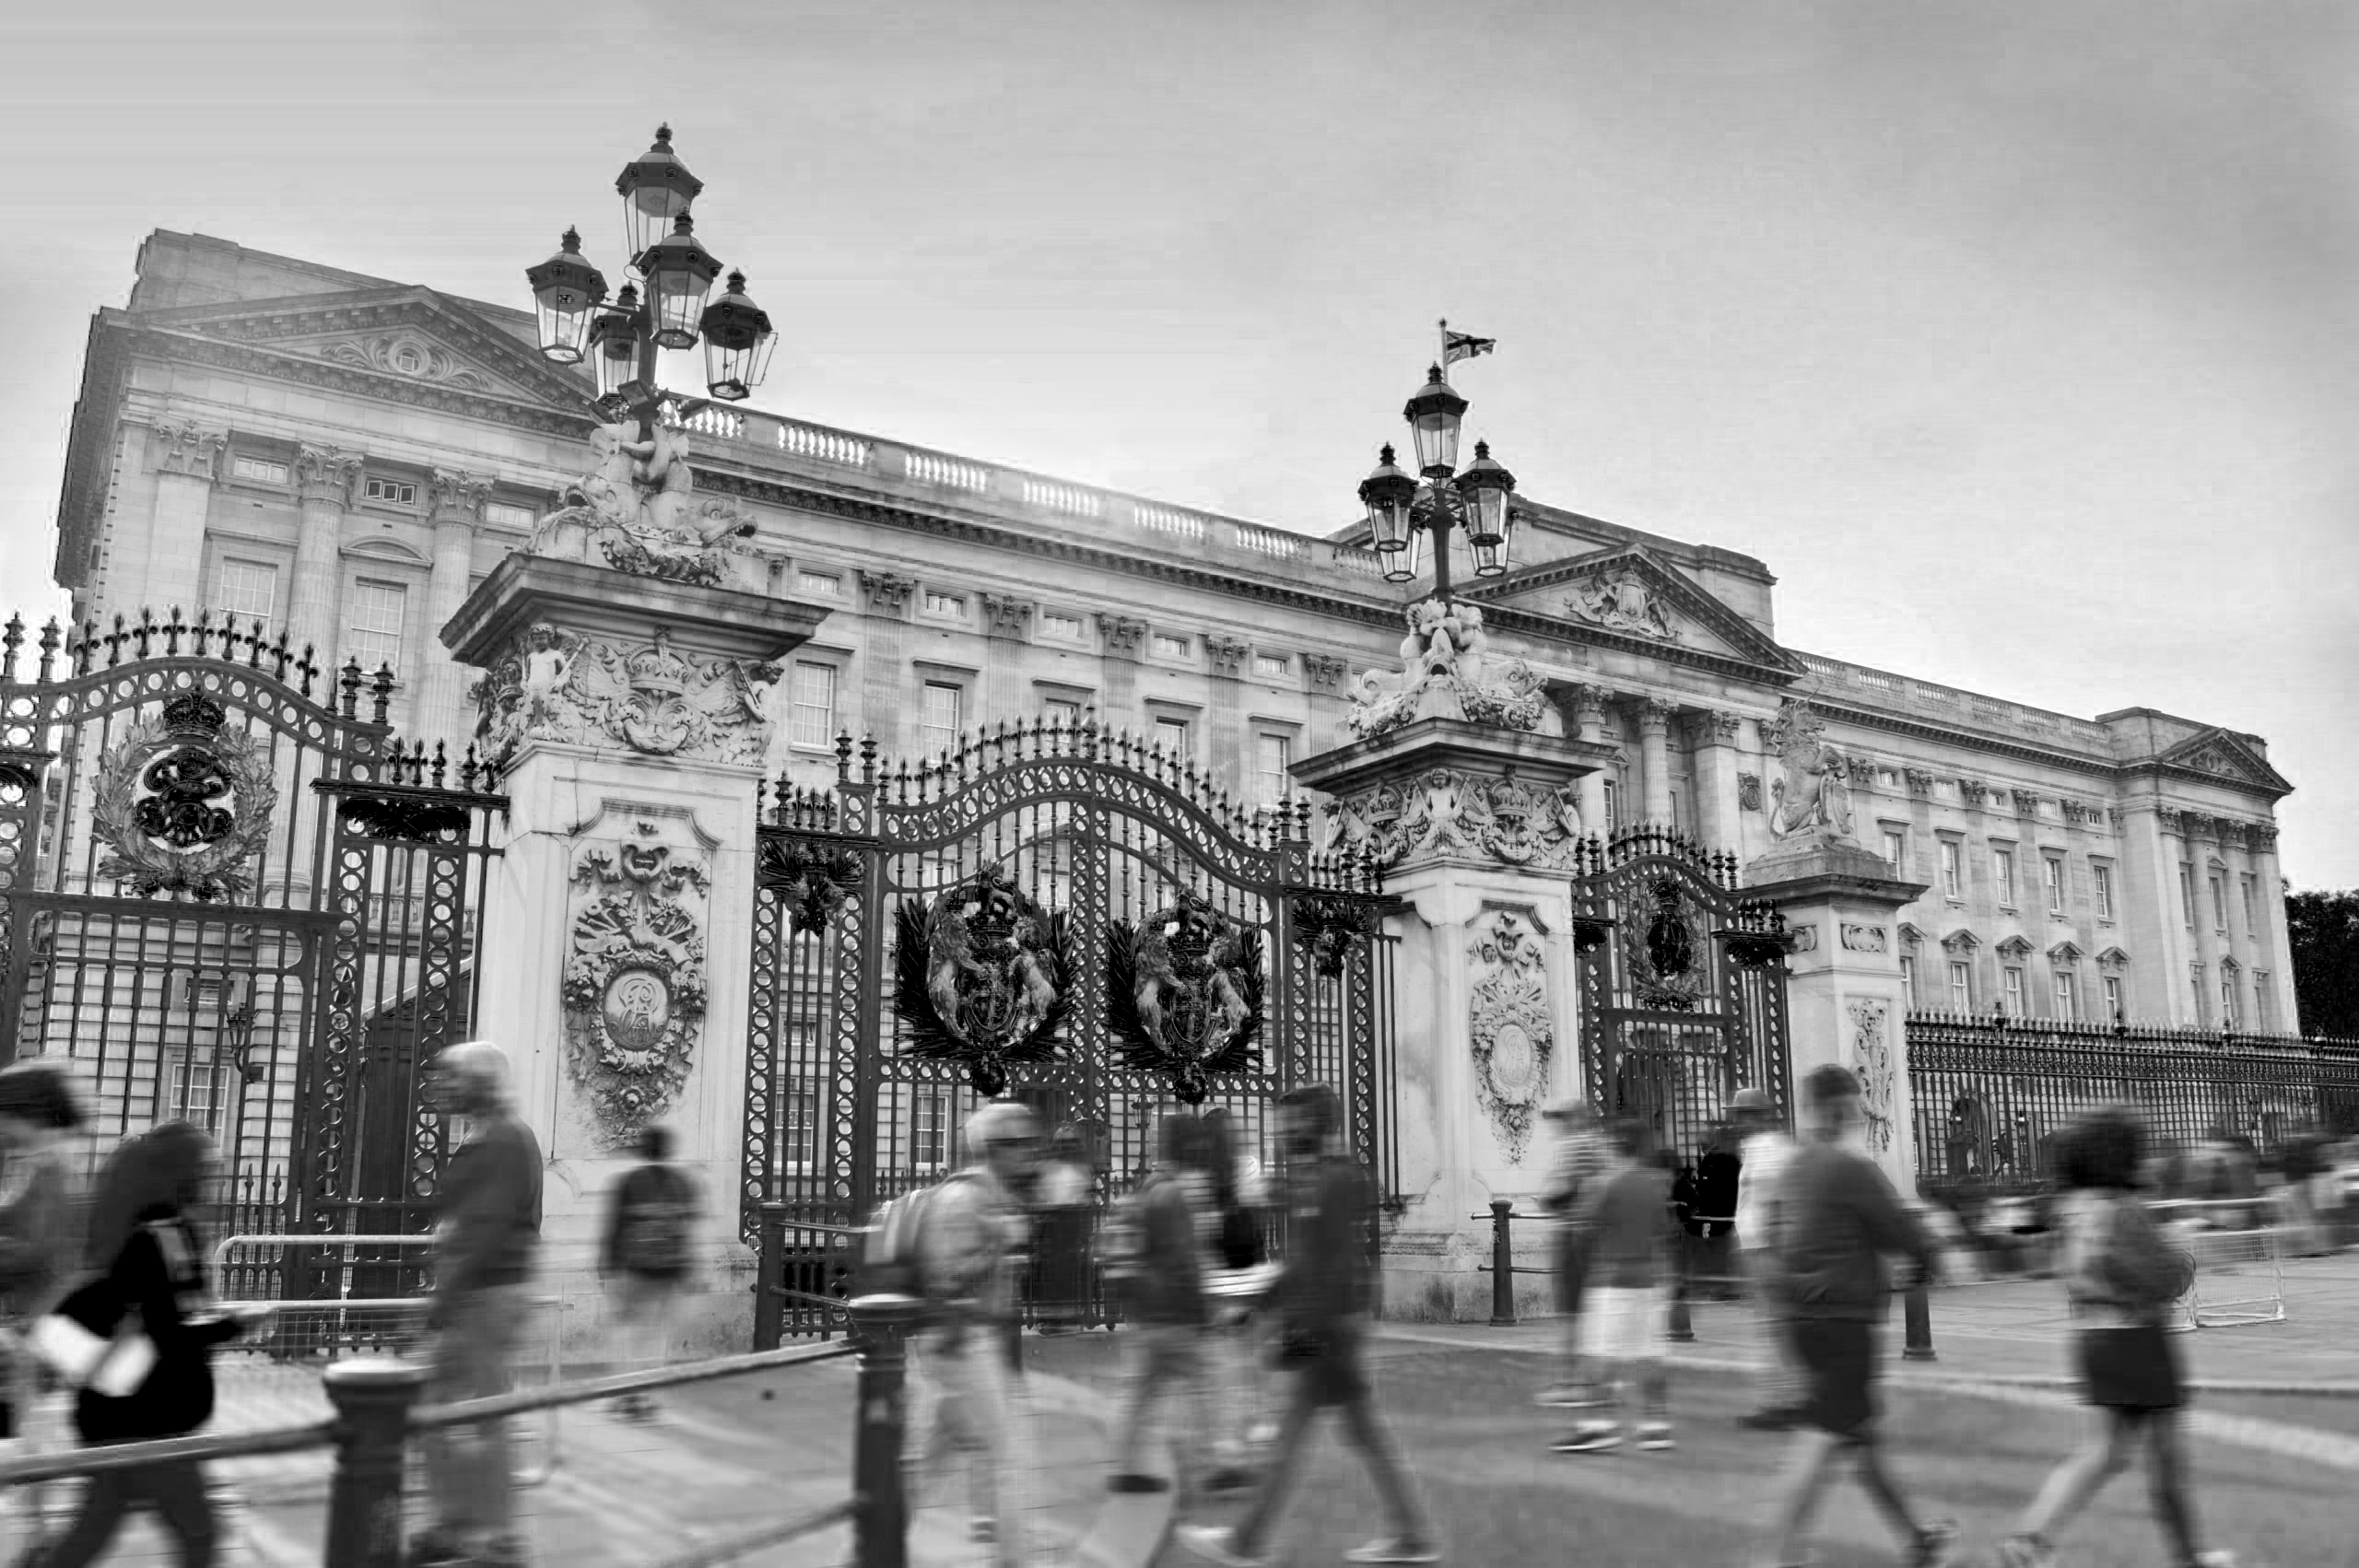 Buckingham Palace black and white